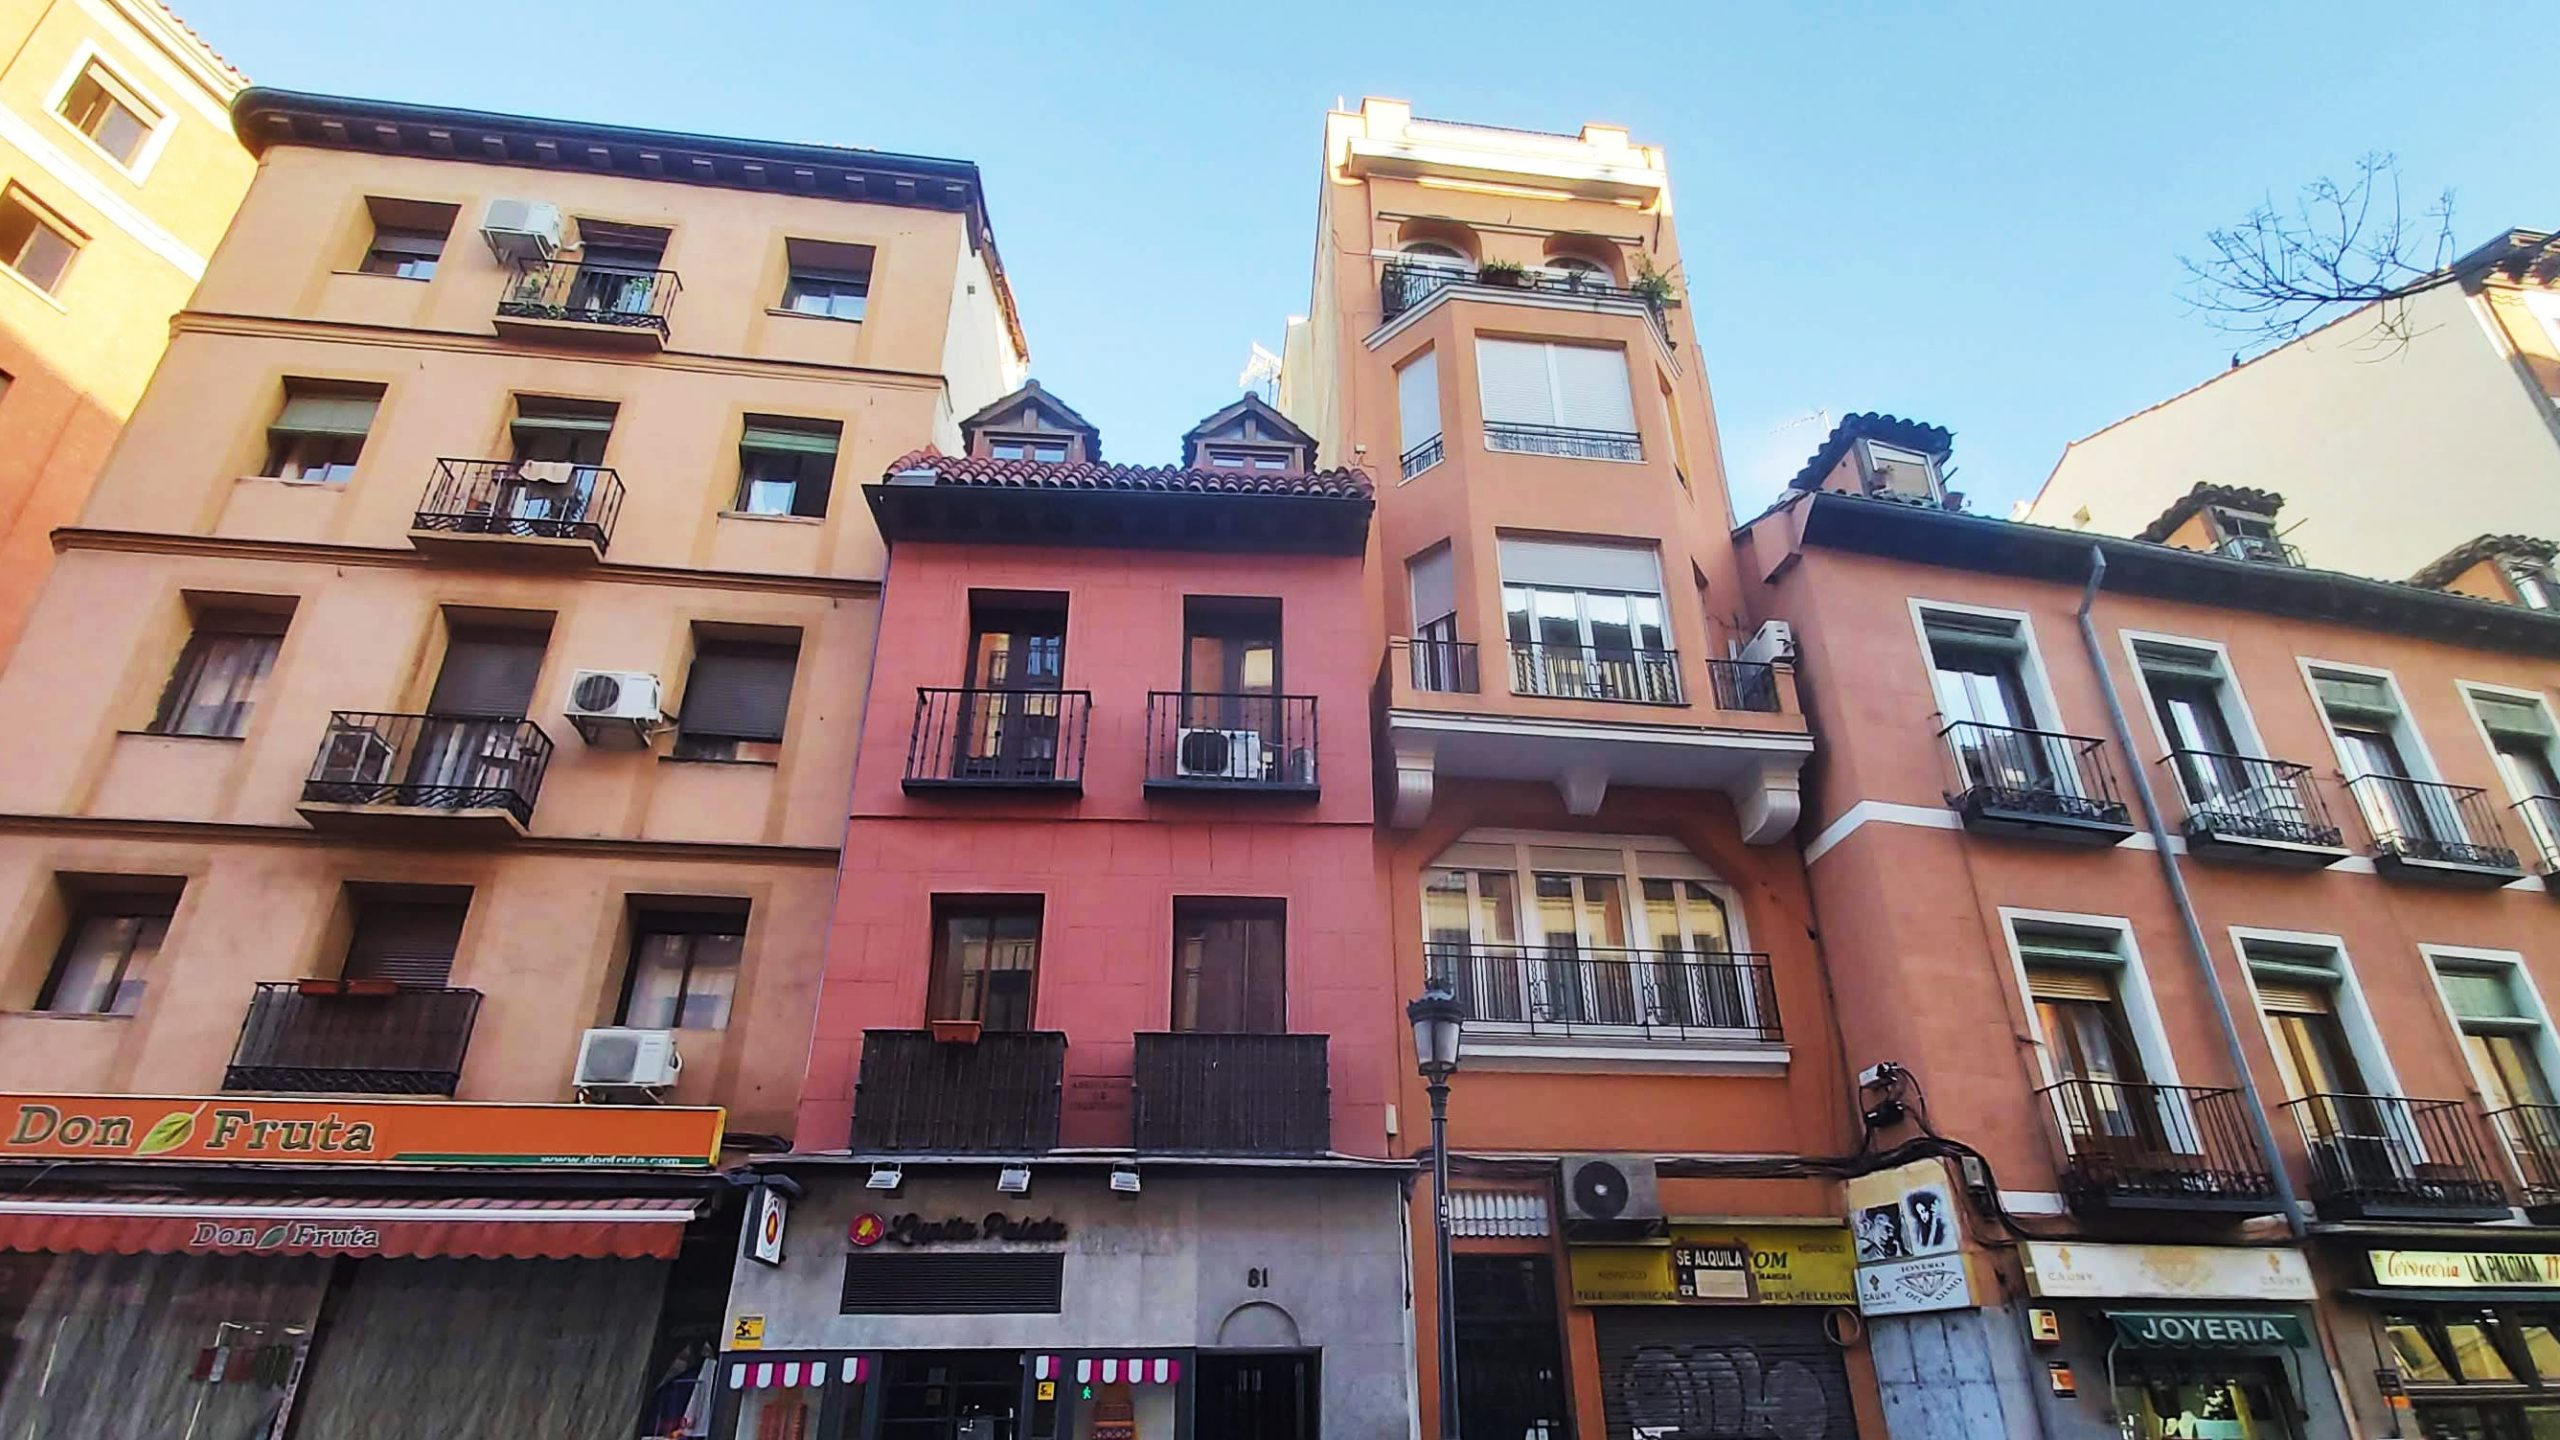 Situat a la part sud-oest del districte Centre, La Latina és un dels barris més antics (i molons) de Madrid.